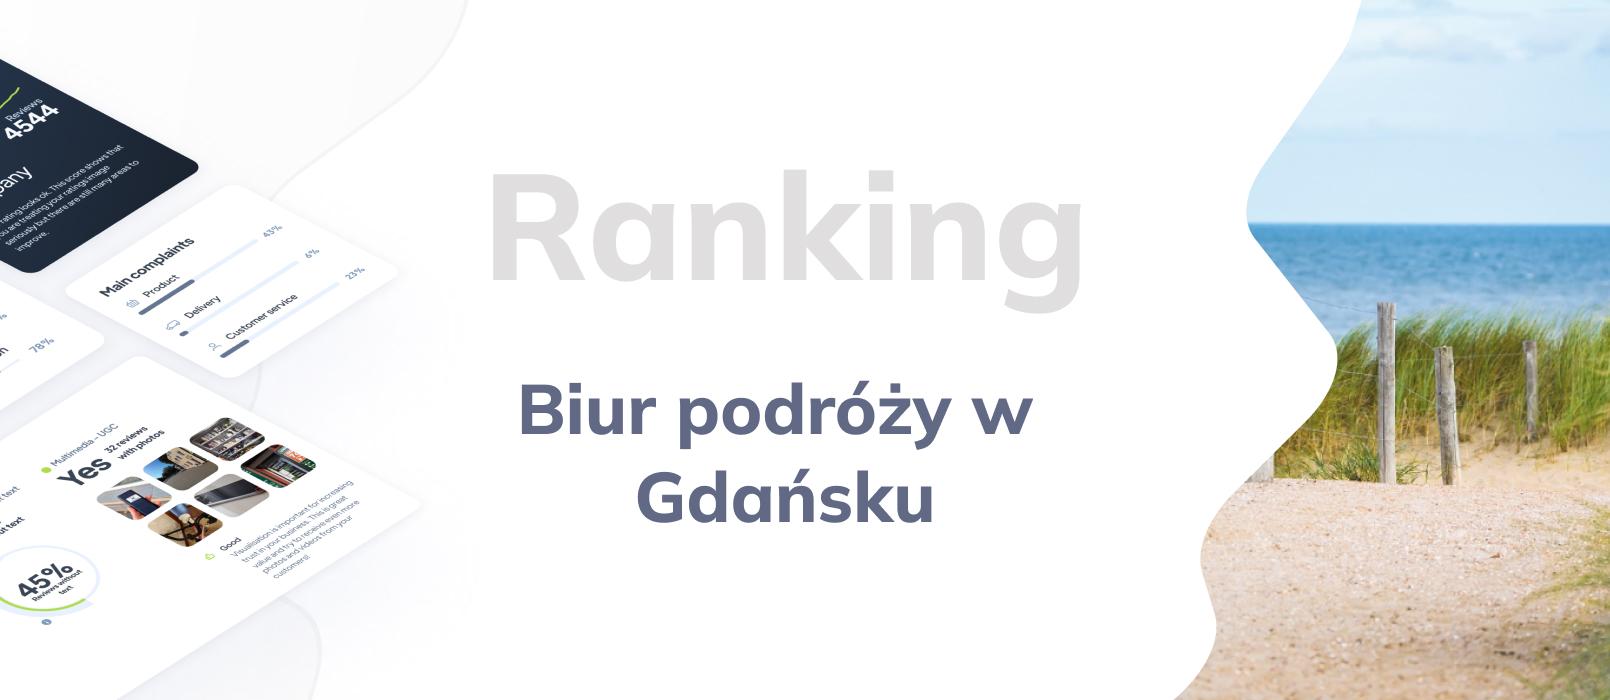 Biura podróży w Gdańsku - ranking TOP 10